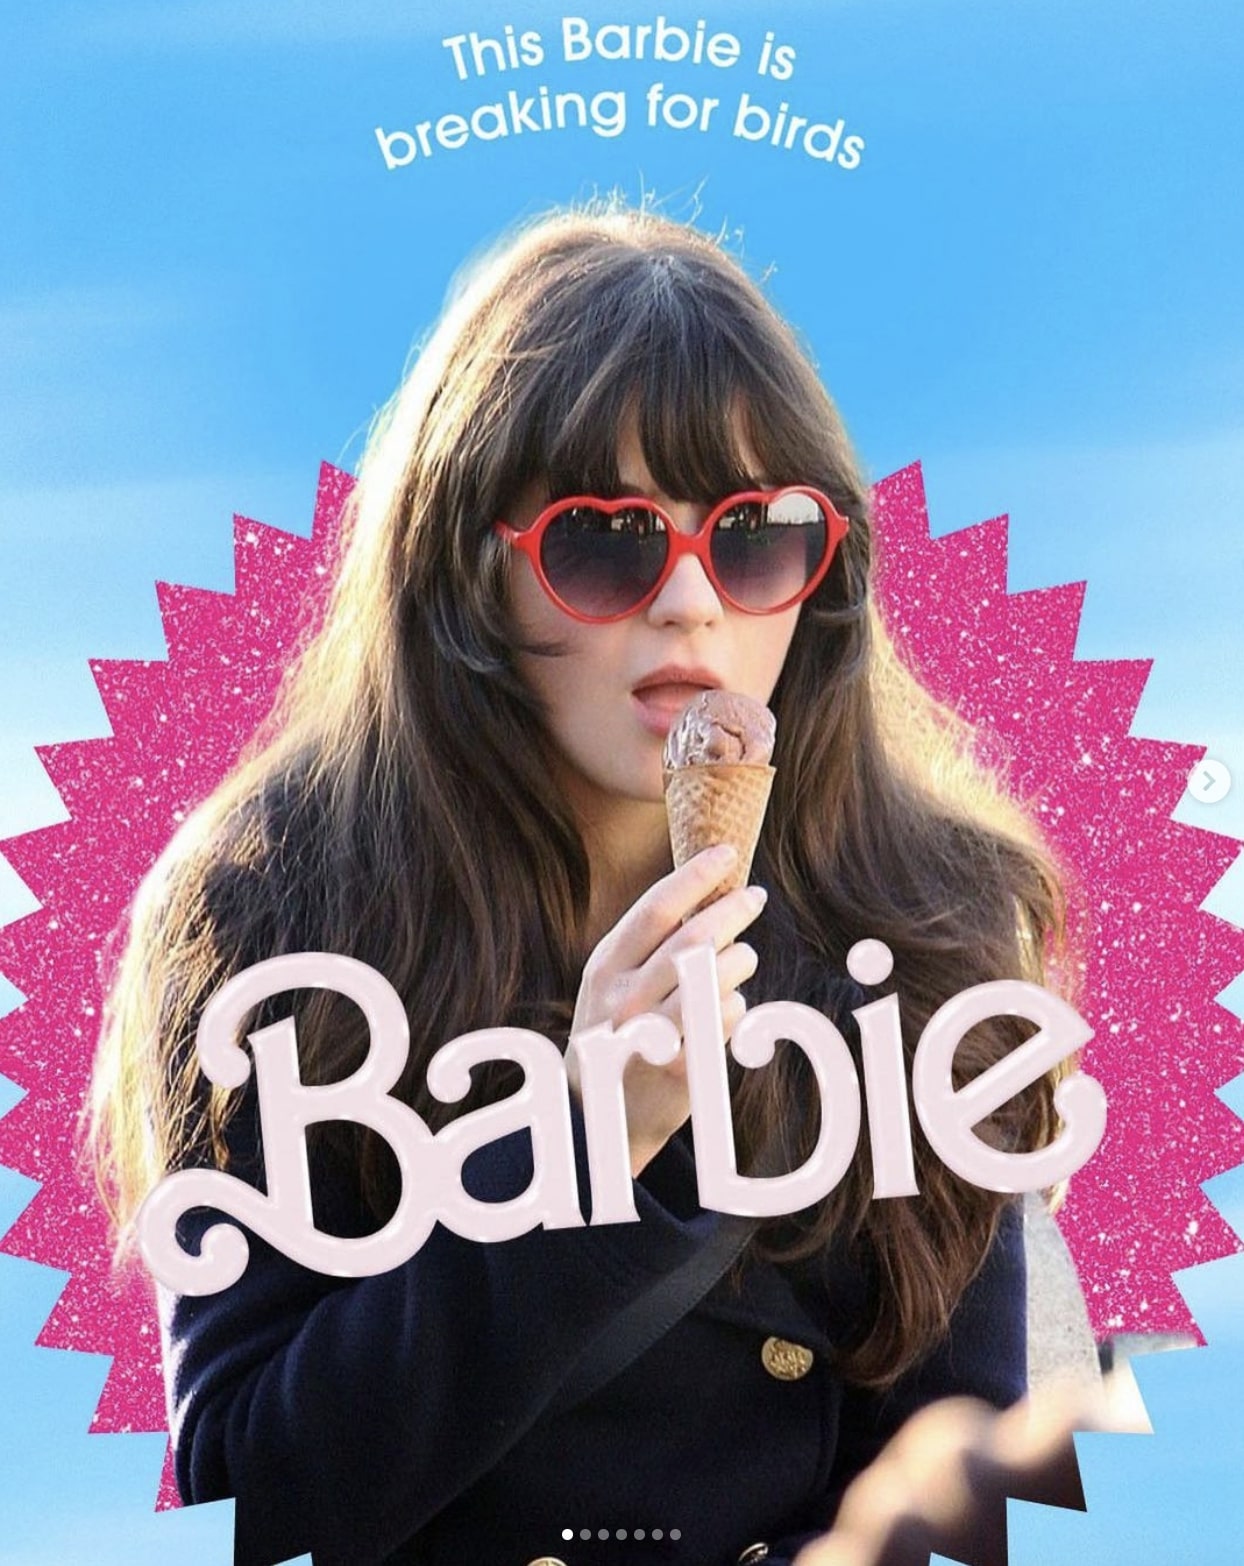 Zooey Deschanel's Barbie image